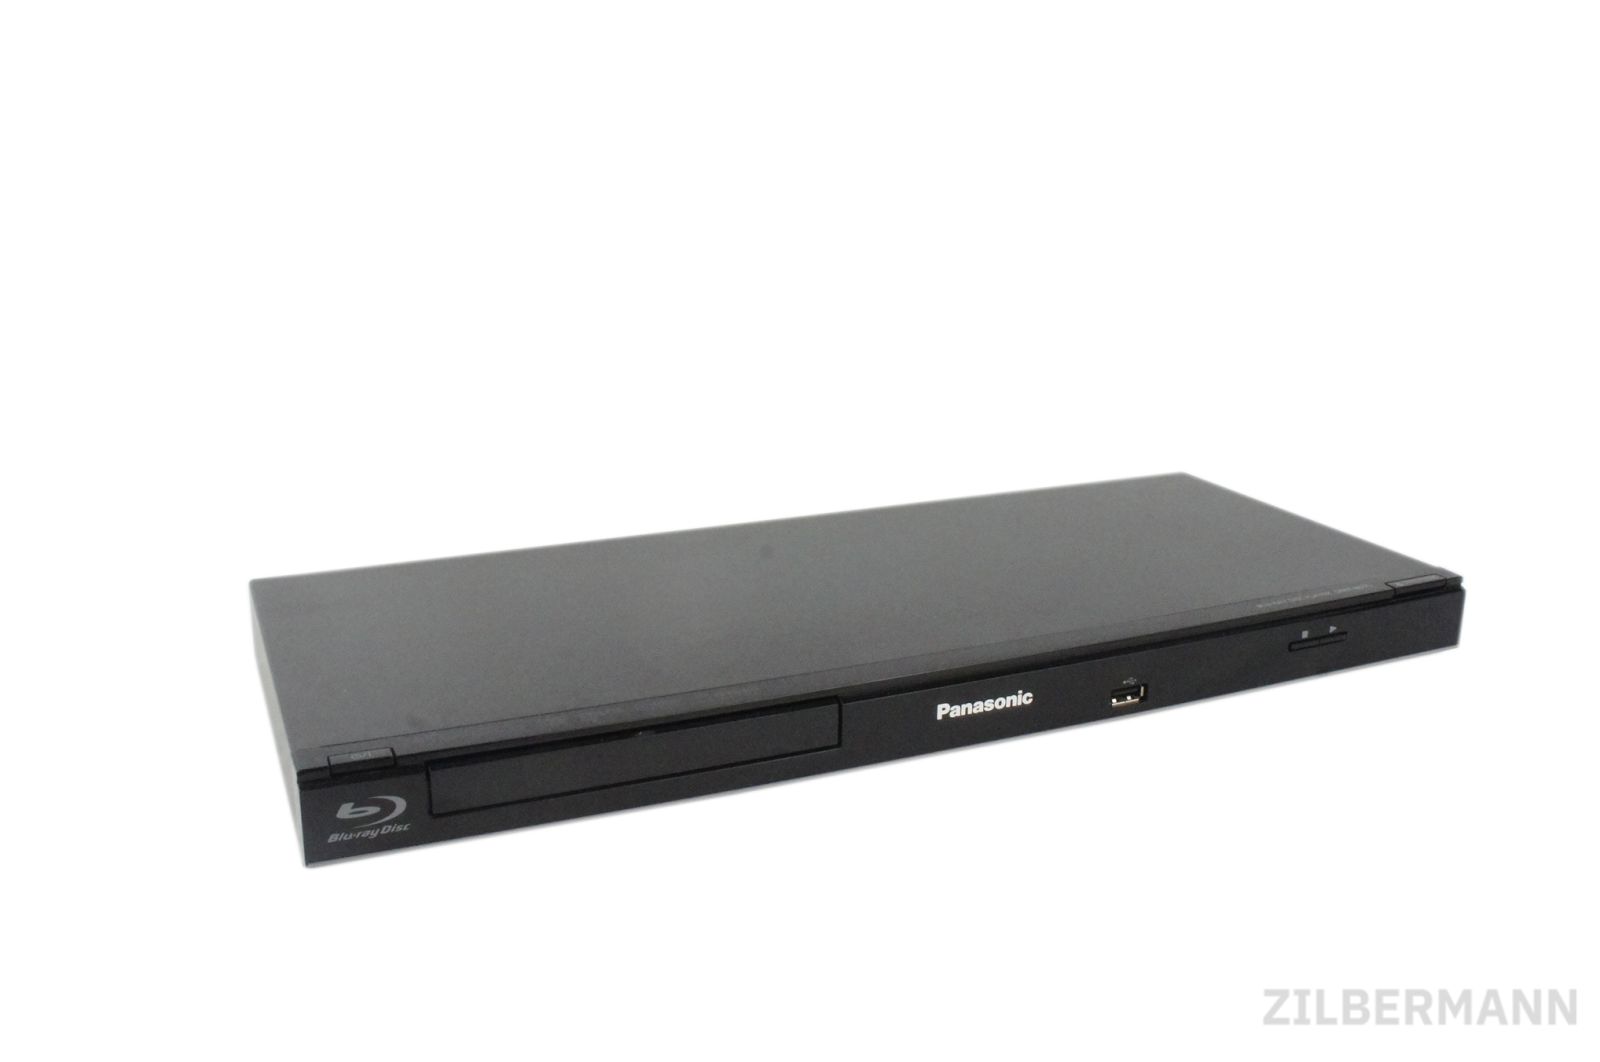 Panasonic_DMP-BD75EG-S_Blu-ray-Player_HDMI_Upscaler_1080p_USB_08